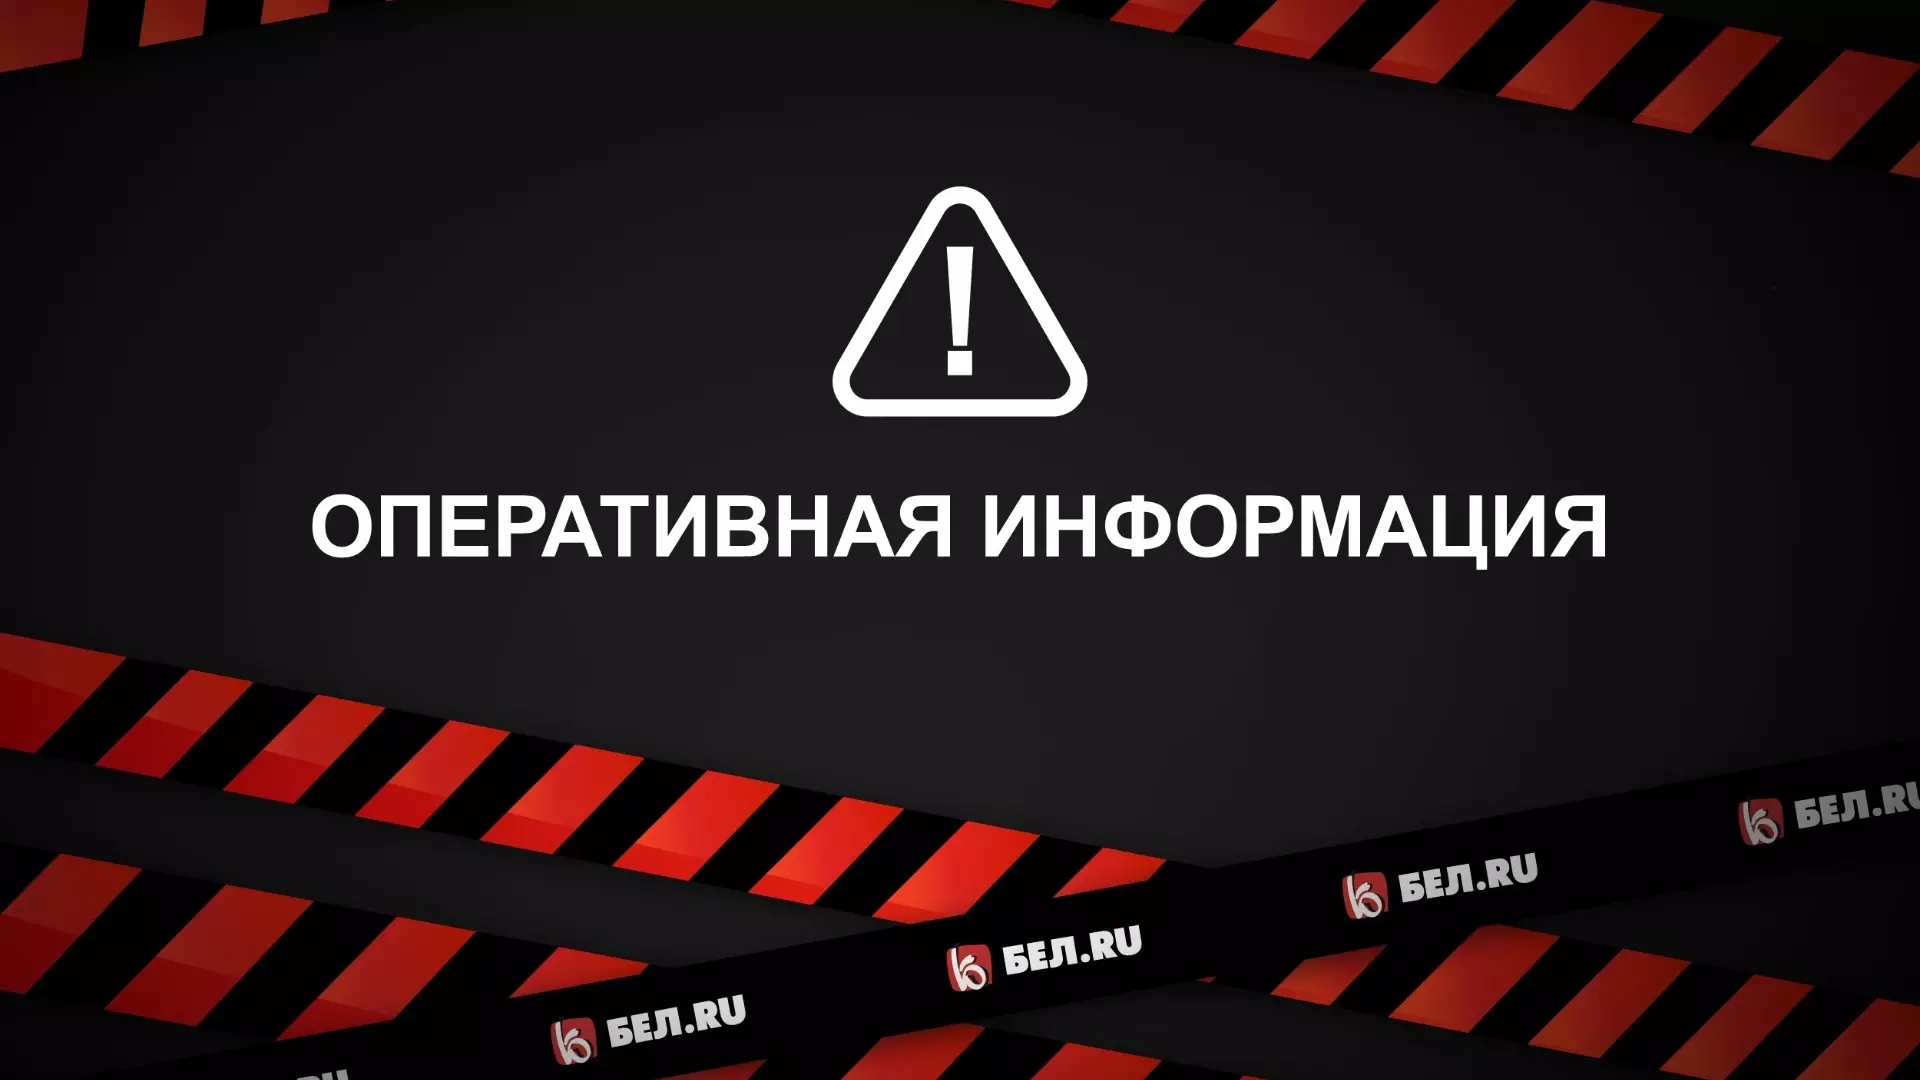 В Сети появилось видео с извинениями от того, кто снял работу ПВО в Белгороде